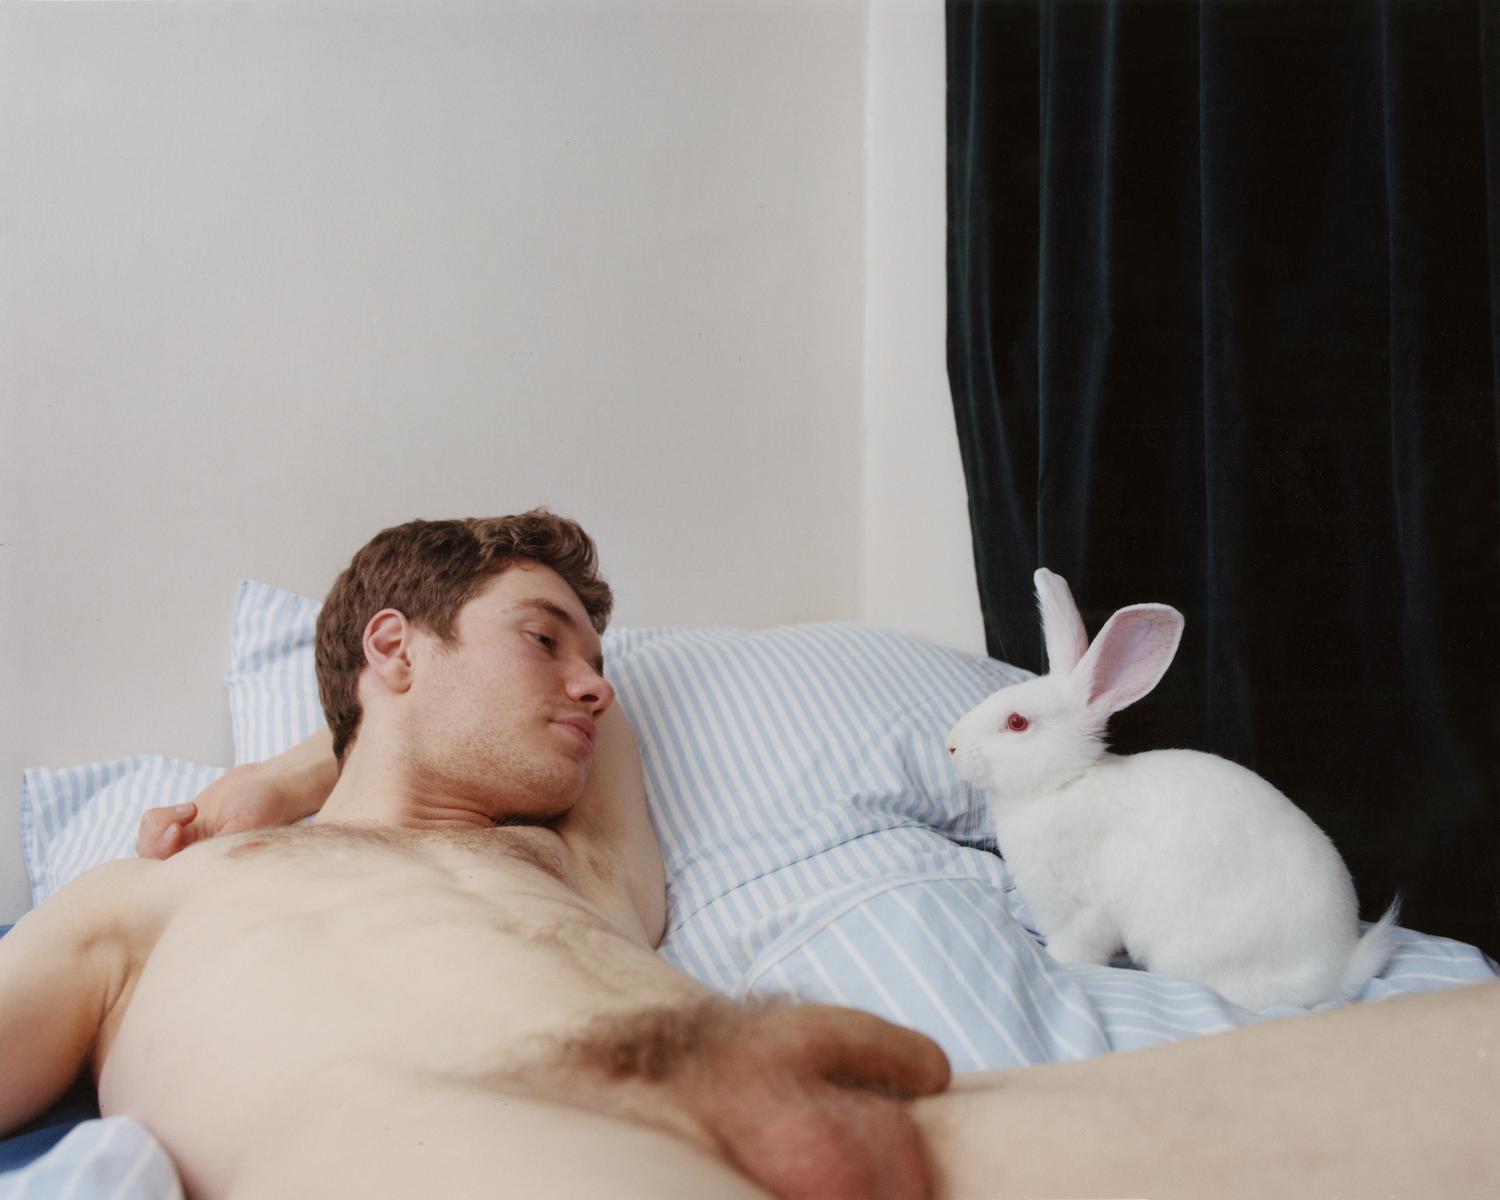 Un jeune homme blanc allongé sur un lit face à un lapin blanc